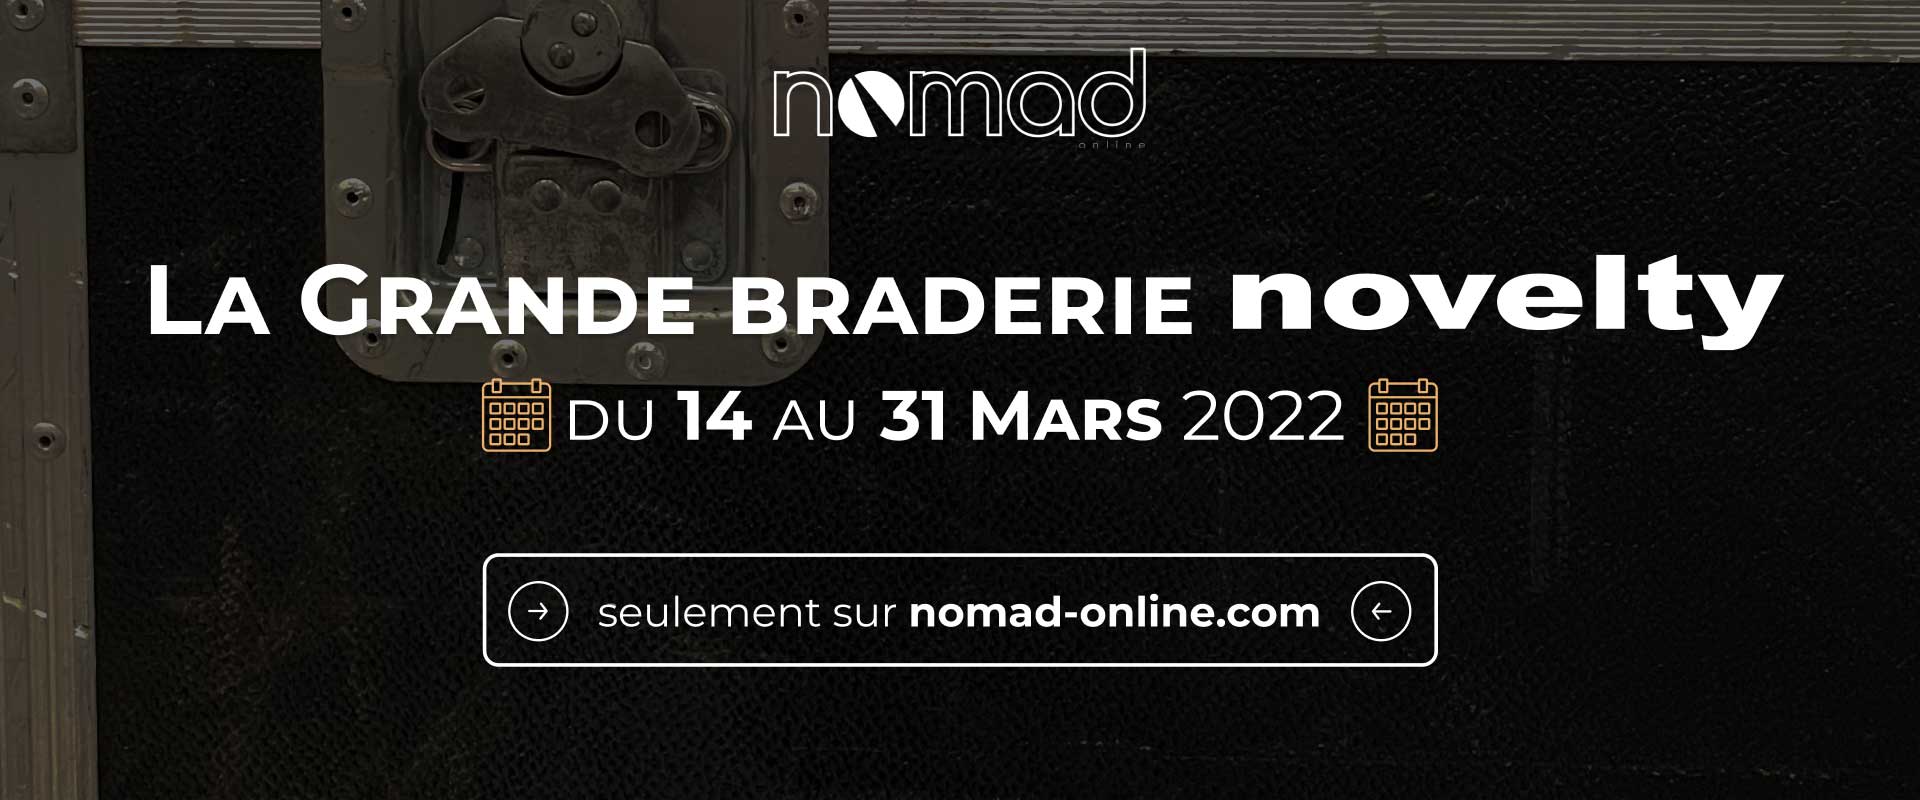 Visuel Braderie Novelty sur Nomad on-line